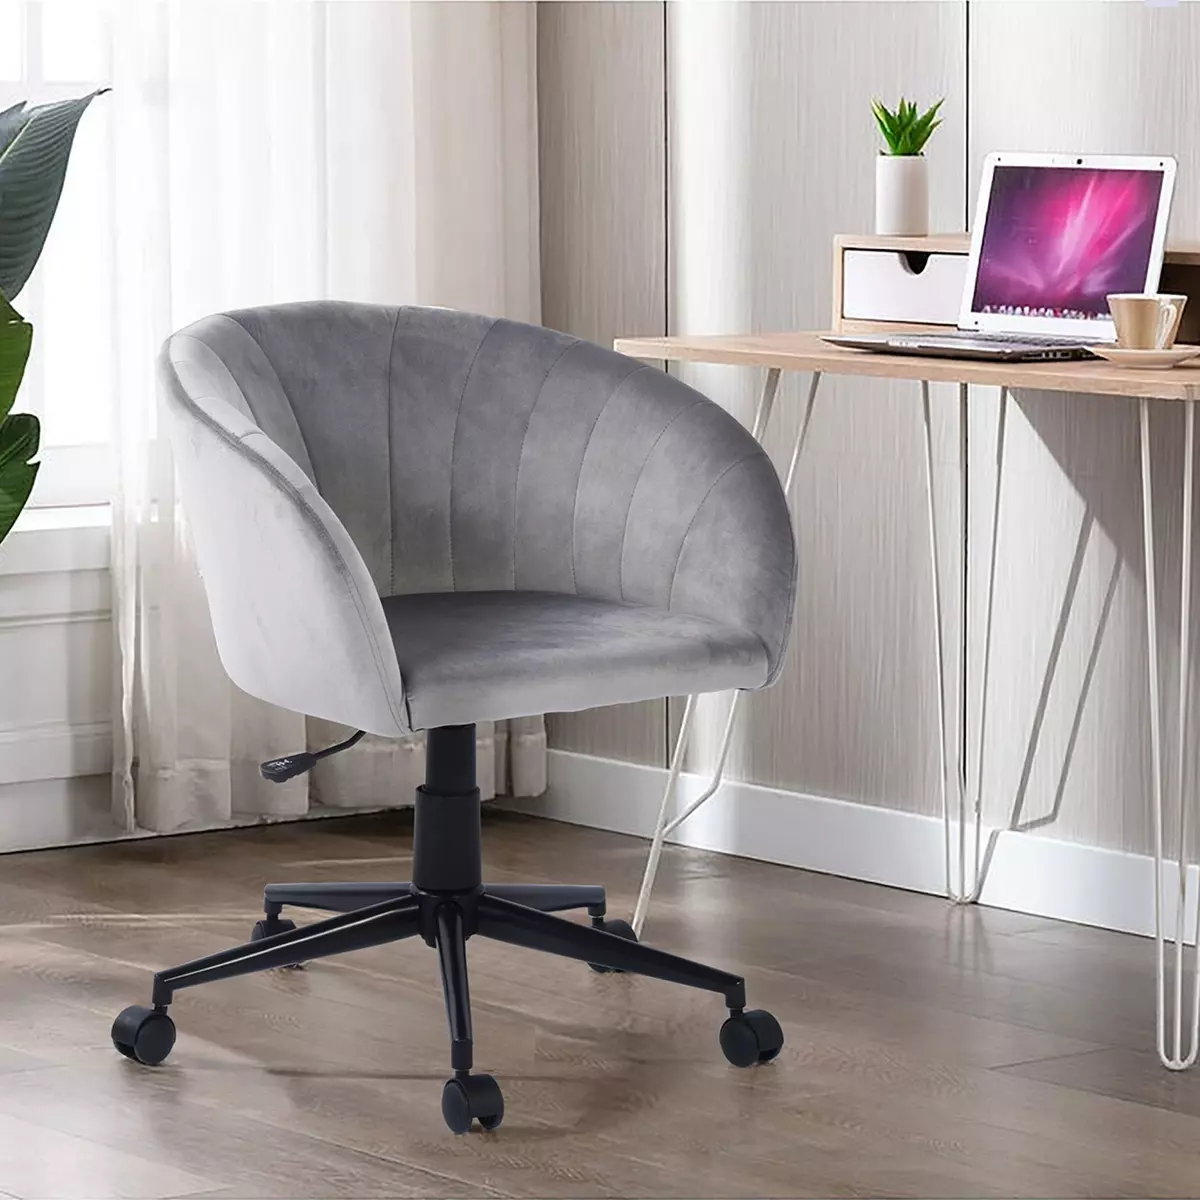  Chaise de bureau en velours gris, réglable en hauteur, pivotante, 64*69*116-126cm